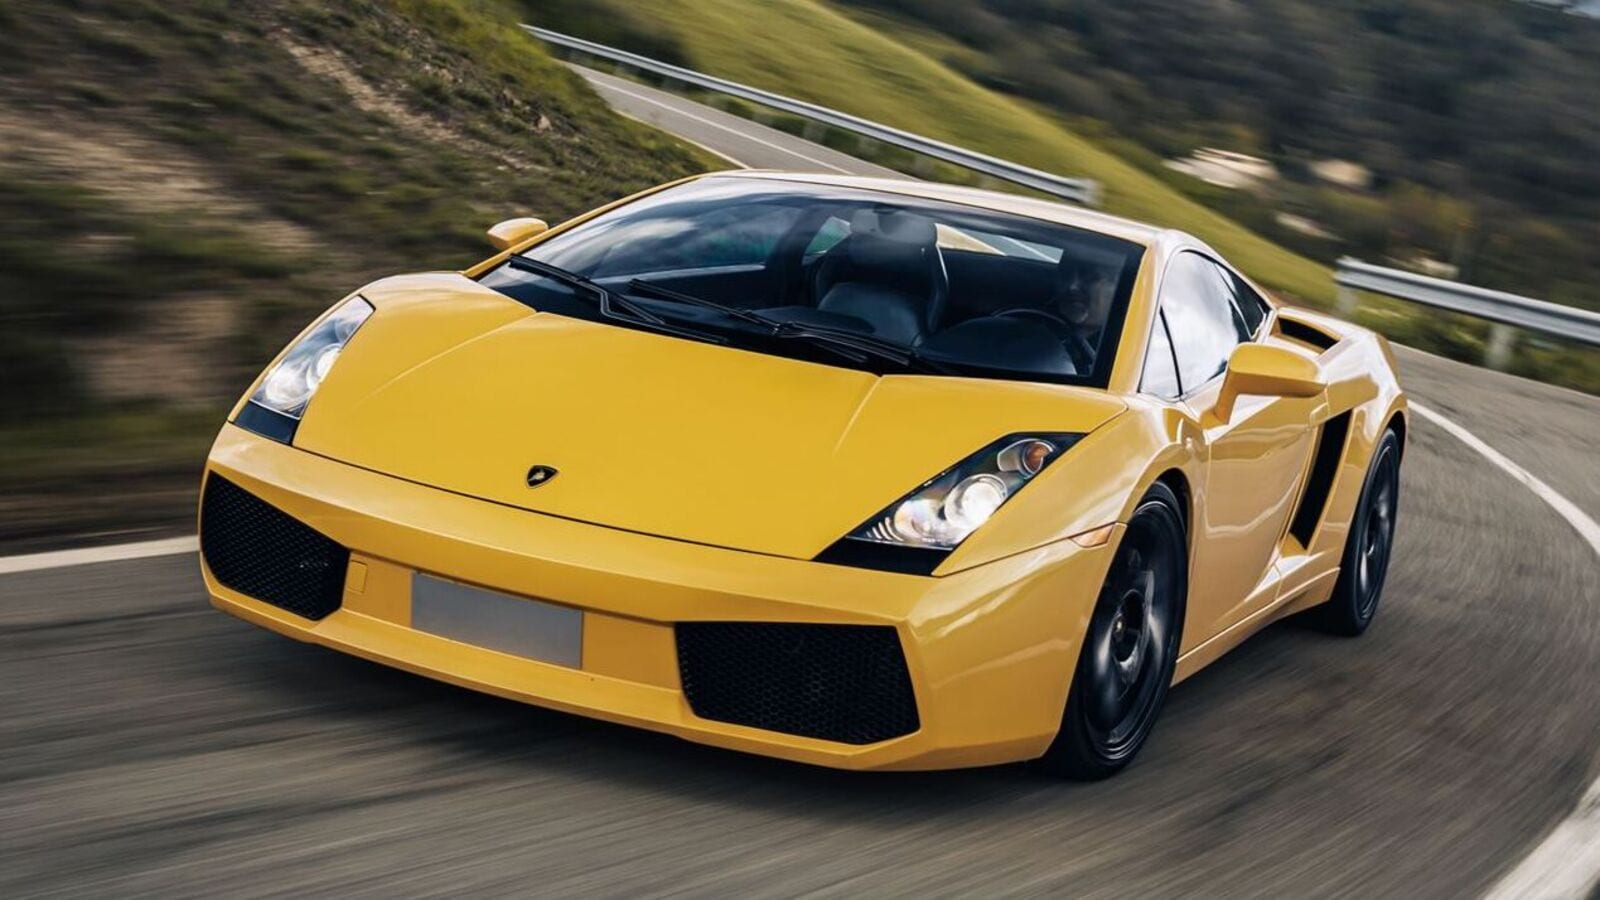 Lamborghini célèbre le 20e anniversaire de l’emblématique voiture de sport Gallardo